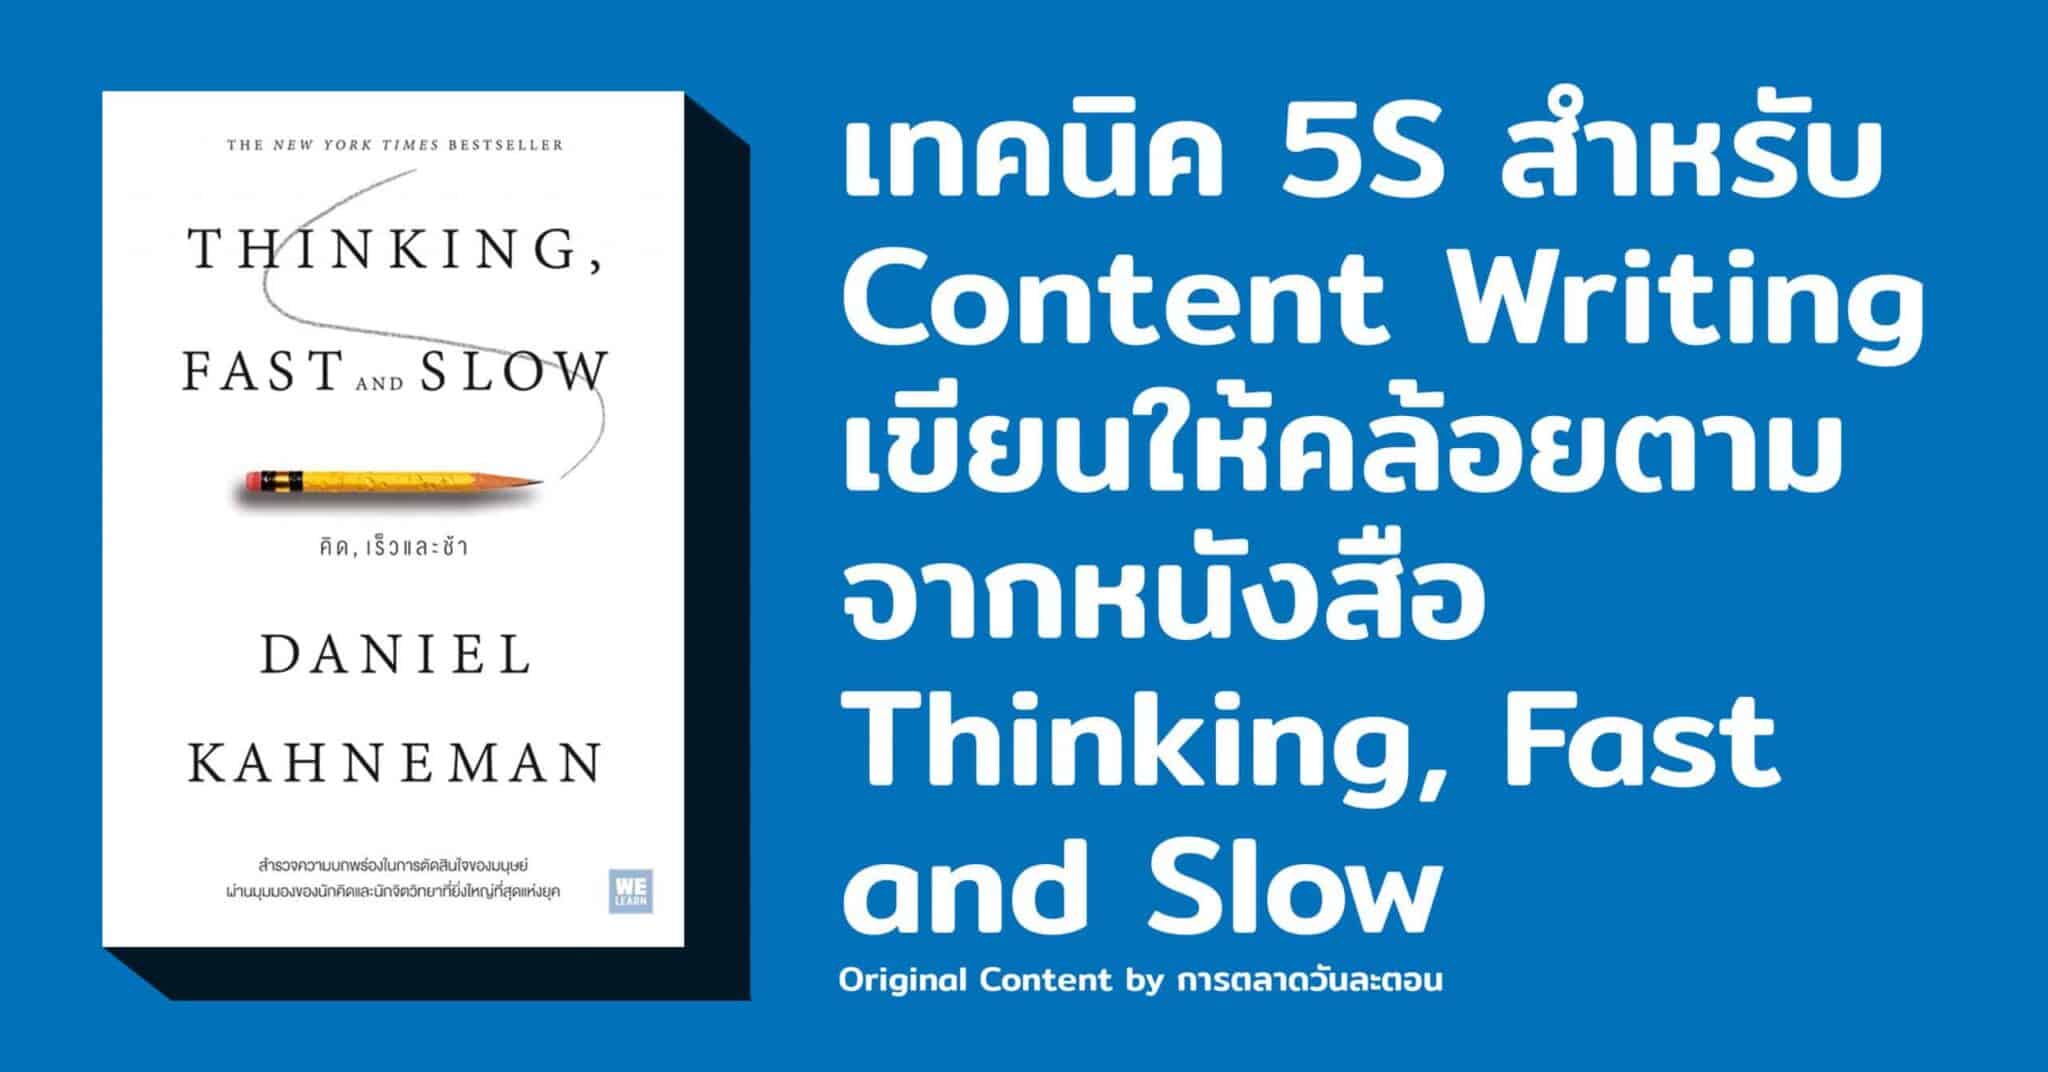 5 เทคนิค Content Writing เขียนอย่างเข้าใจสมอง จาก Thinking Fast and Slow